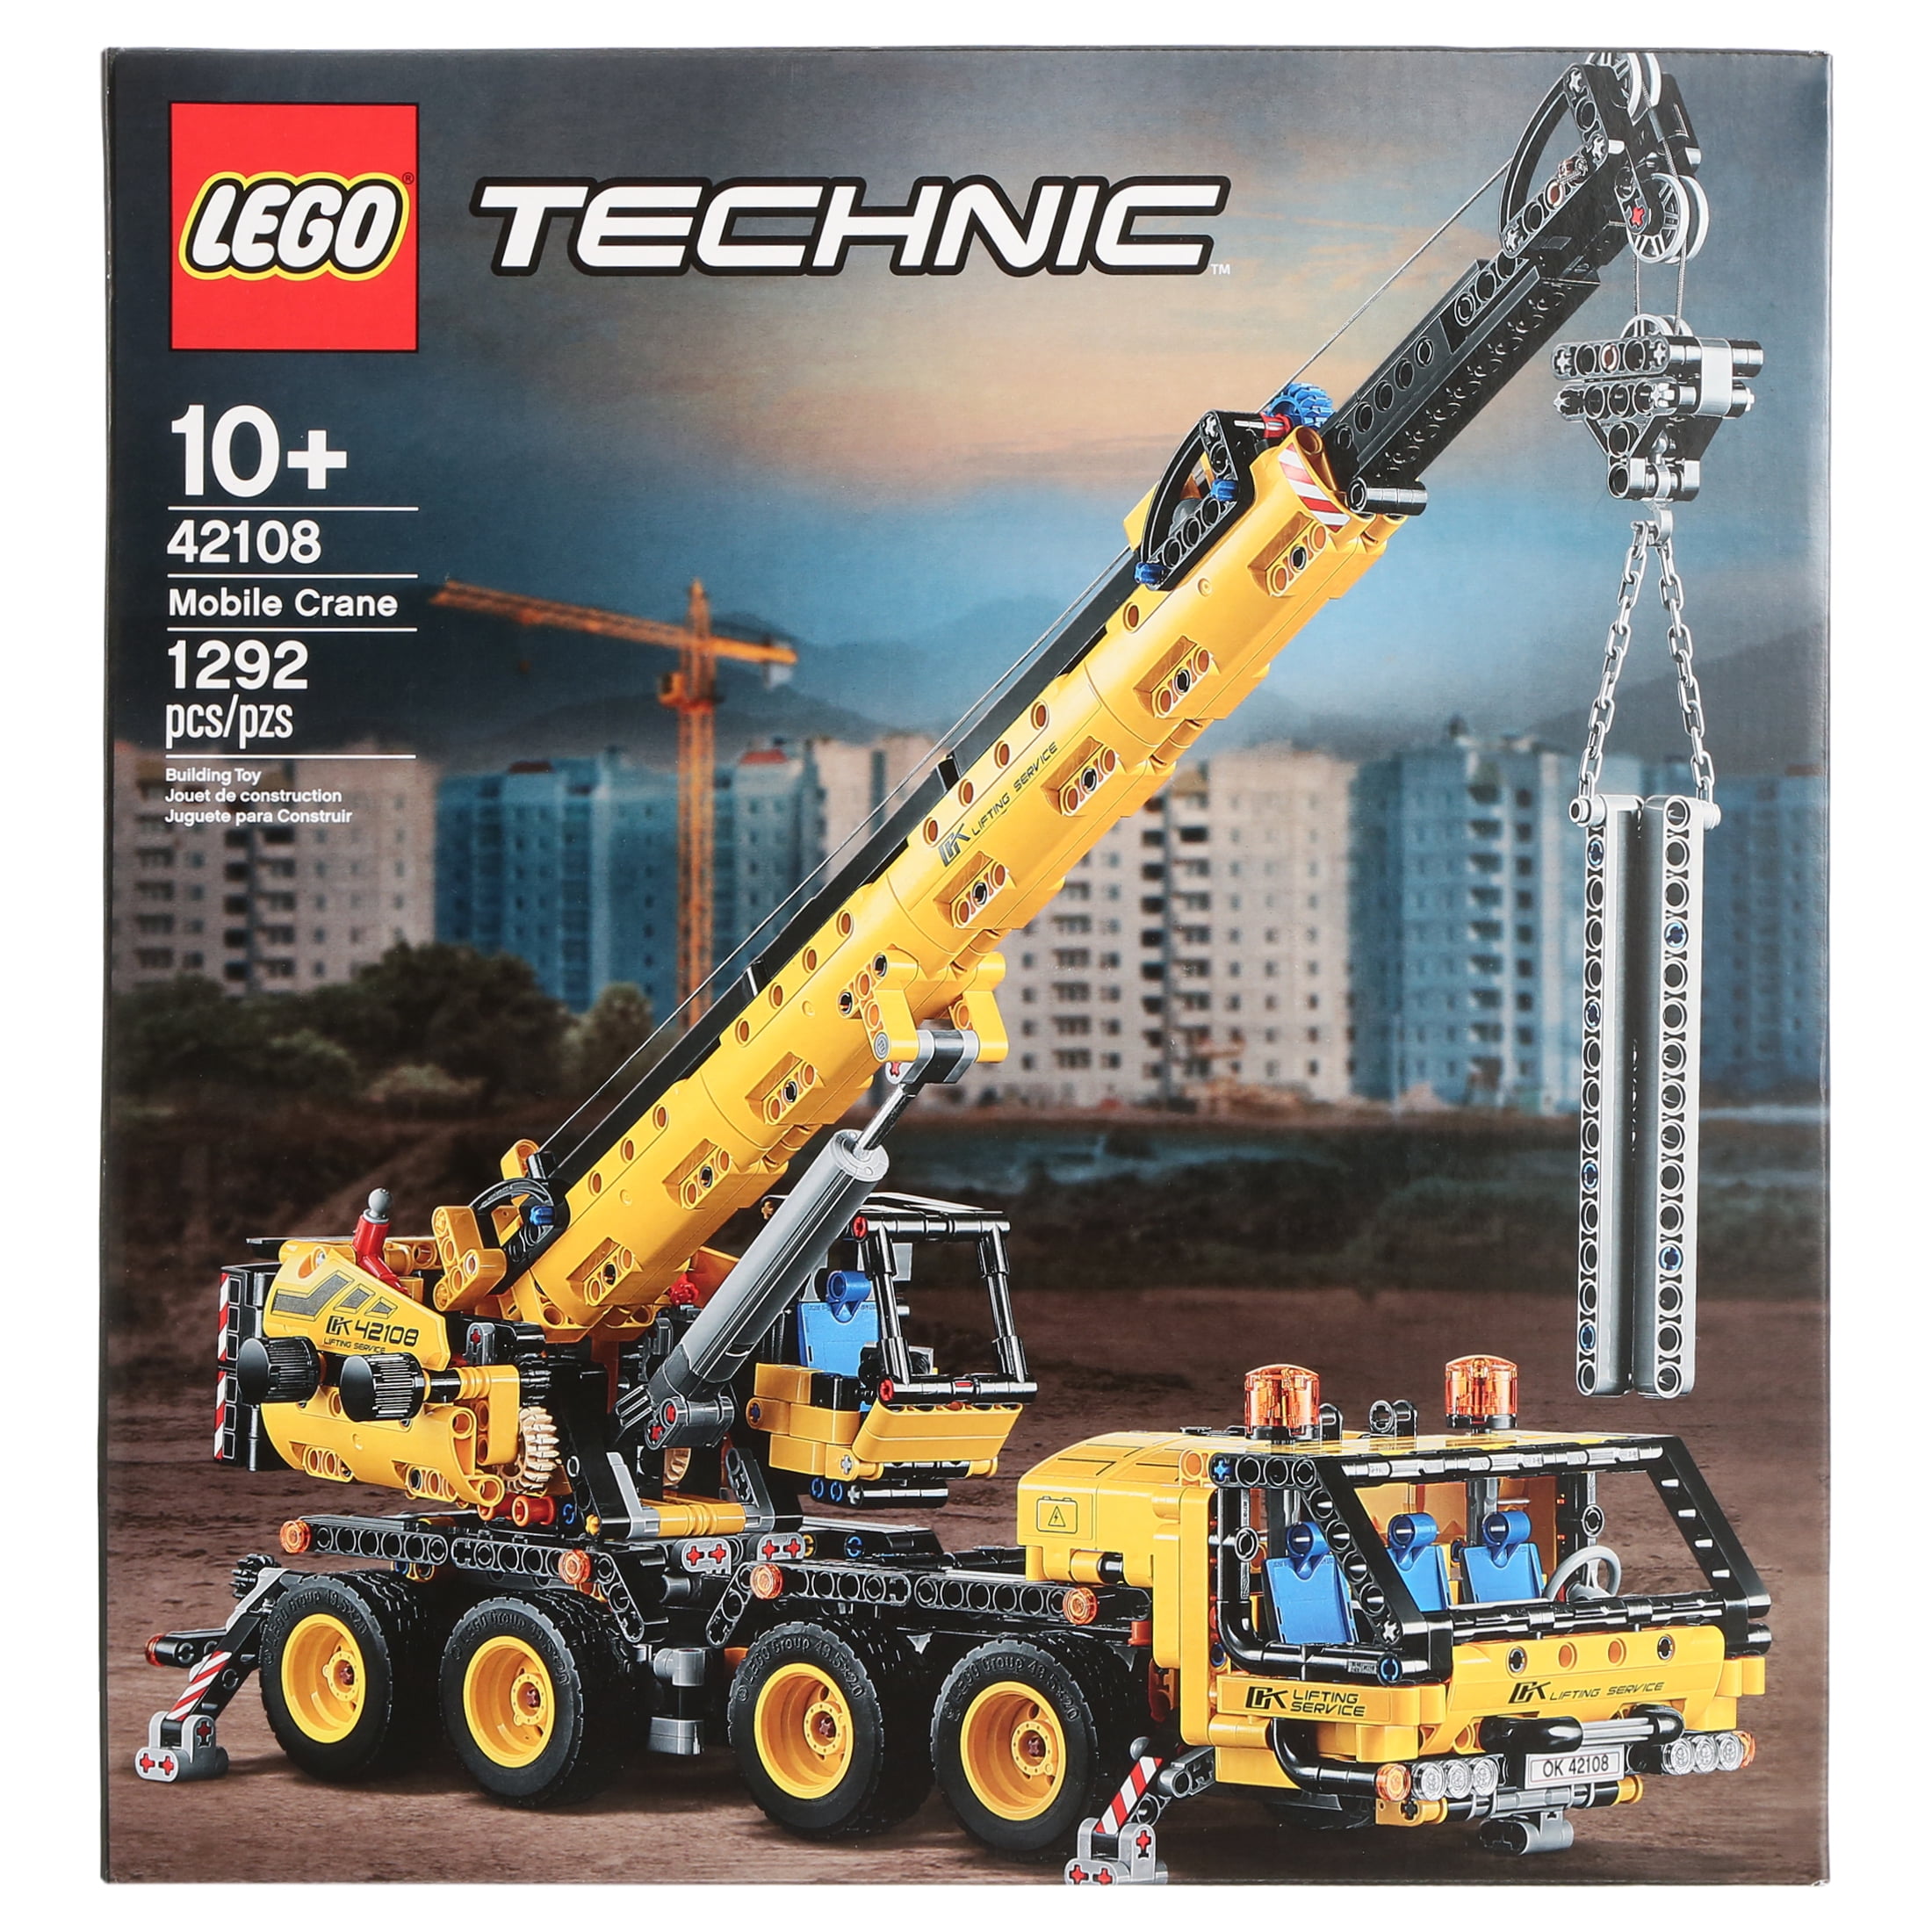 Technic Mobile Crane 42108 Construction Toy Building Kit (1,292 pieces) Walmart.com